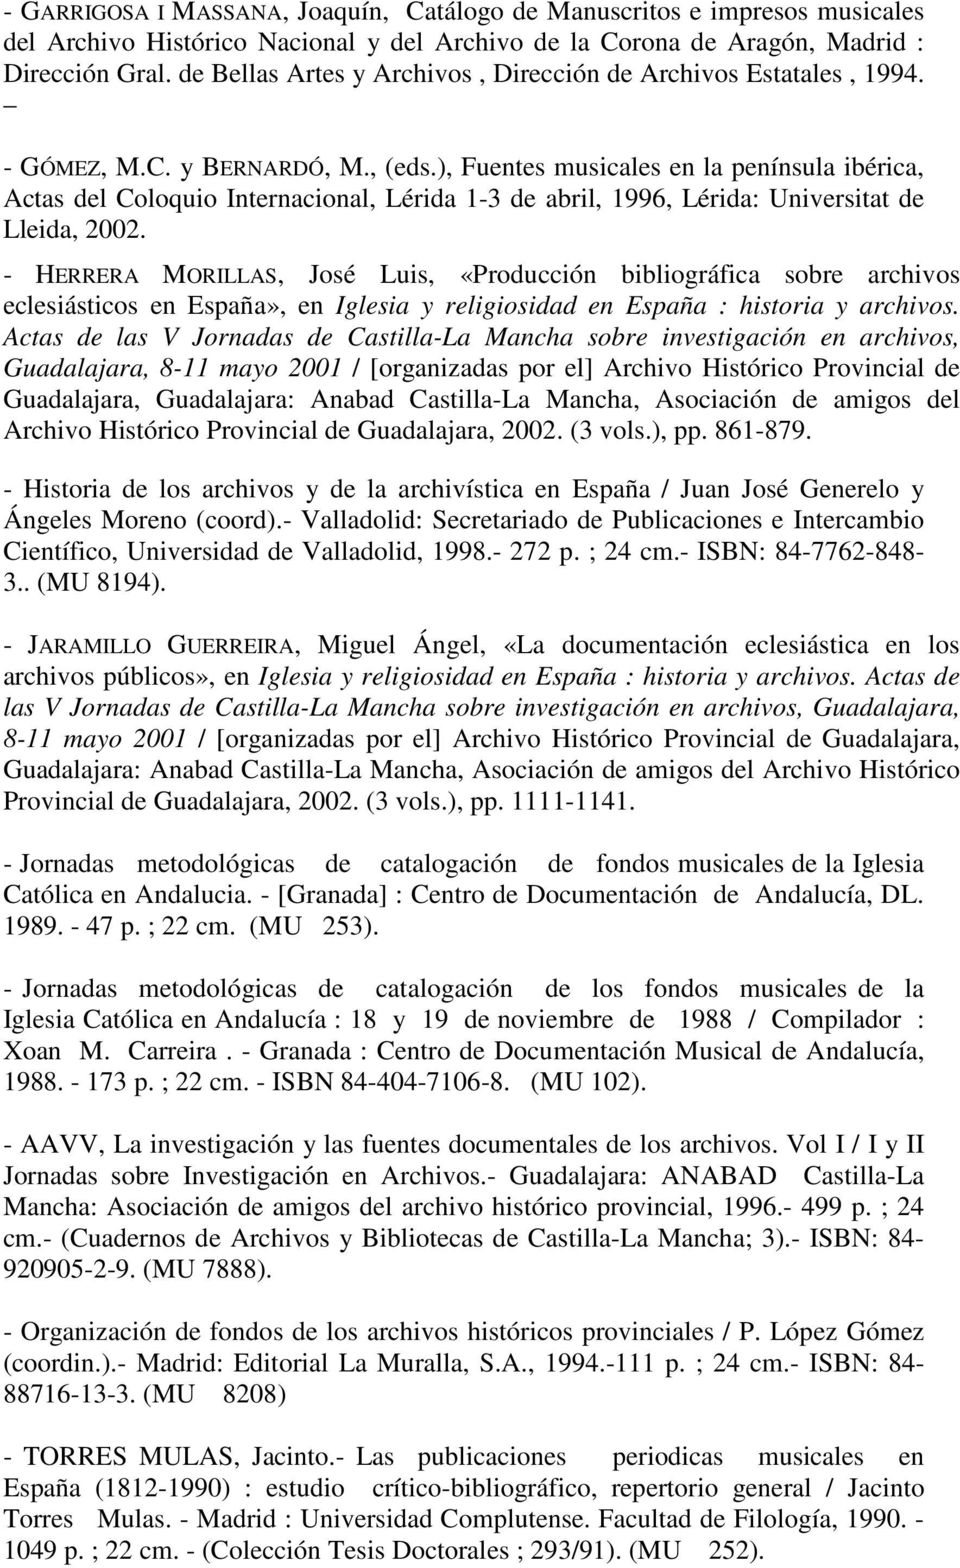 ), Fuentes musicales en la península ibérica, Actas del Coloquio Internacional, Lérida 1-3 de abril, 1996, Lérida: Universitat de Lleida, 2002.